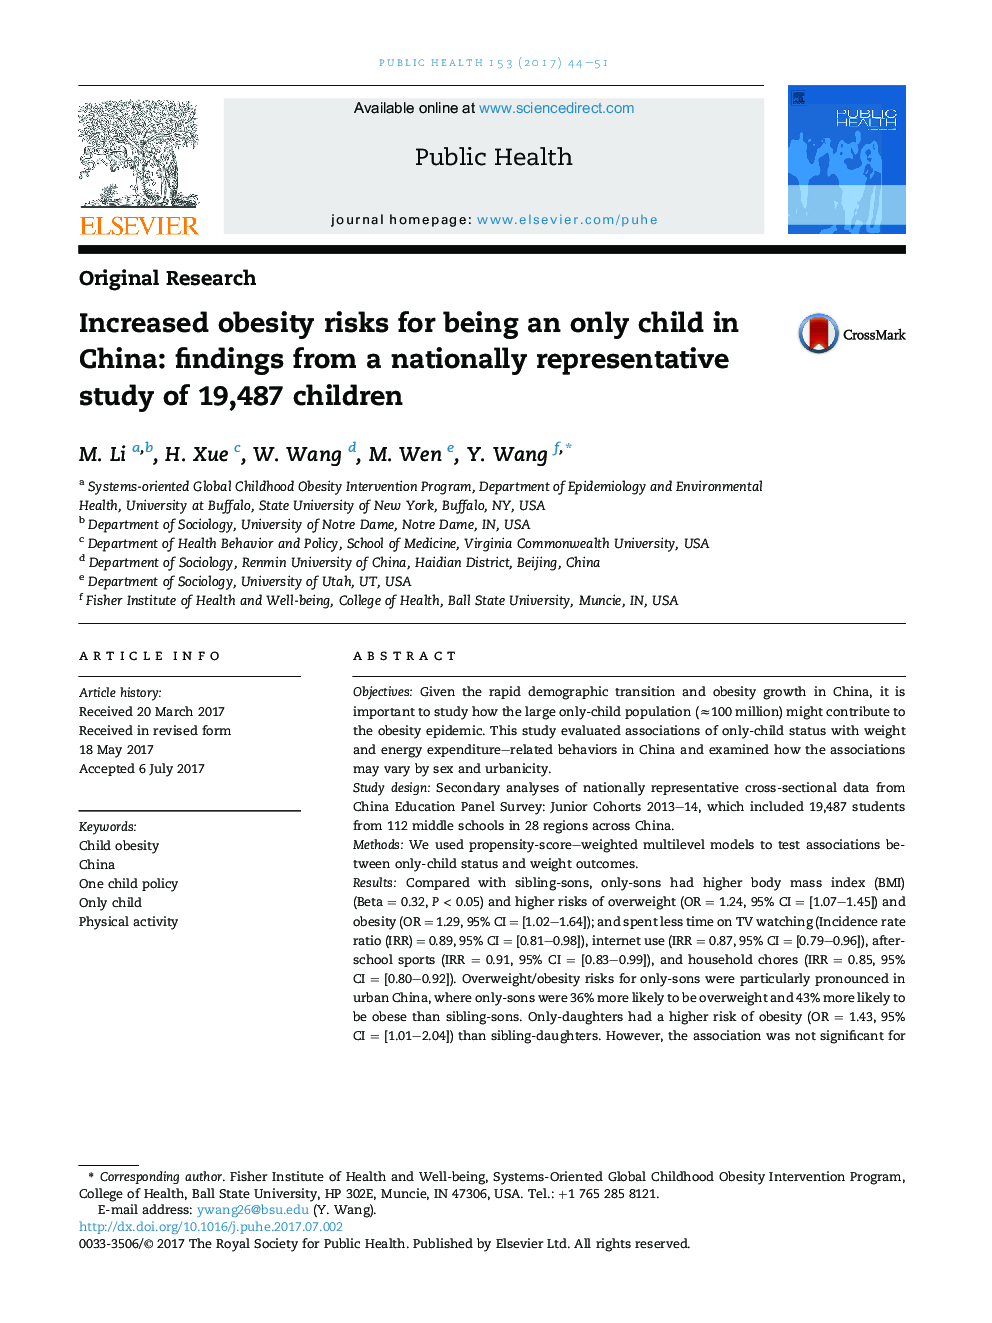 افزایش ریسک چاقی برای داشتن یک کودک تنها در چین: یافته های یک مطالعه نمایندگی ملی از 19487 کودک 